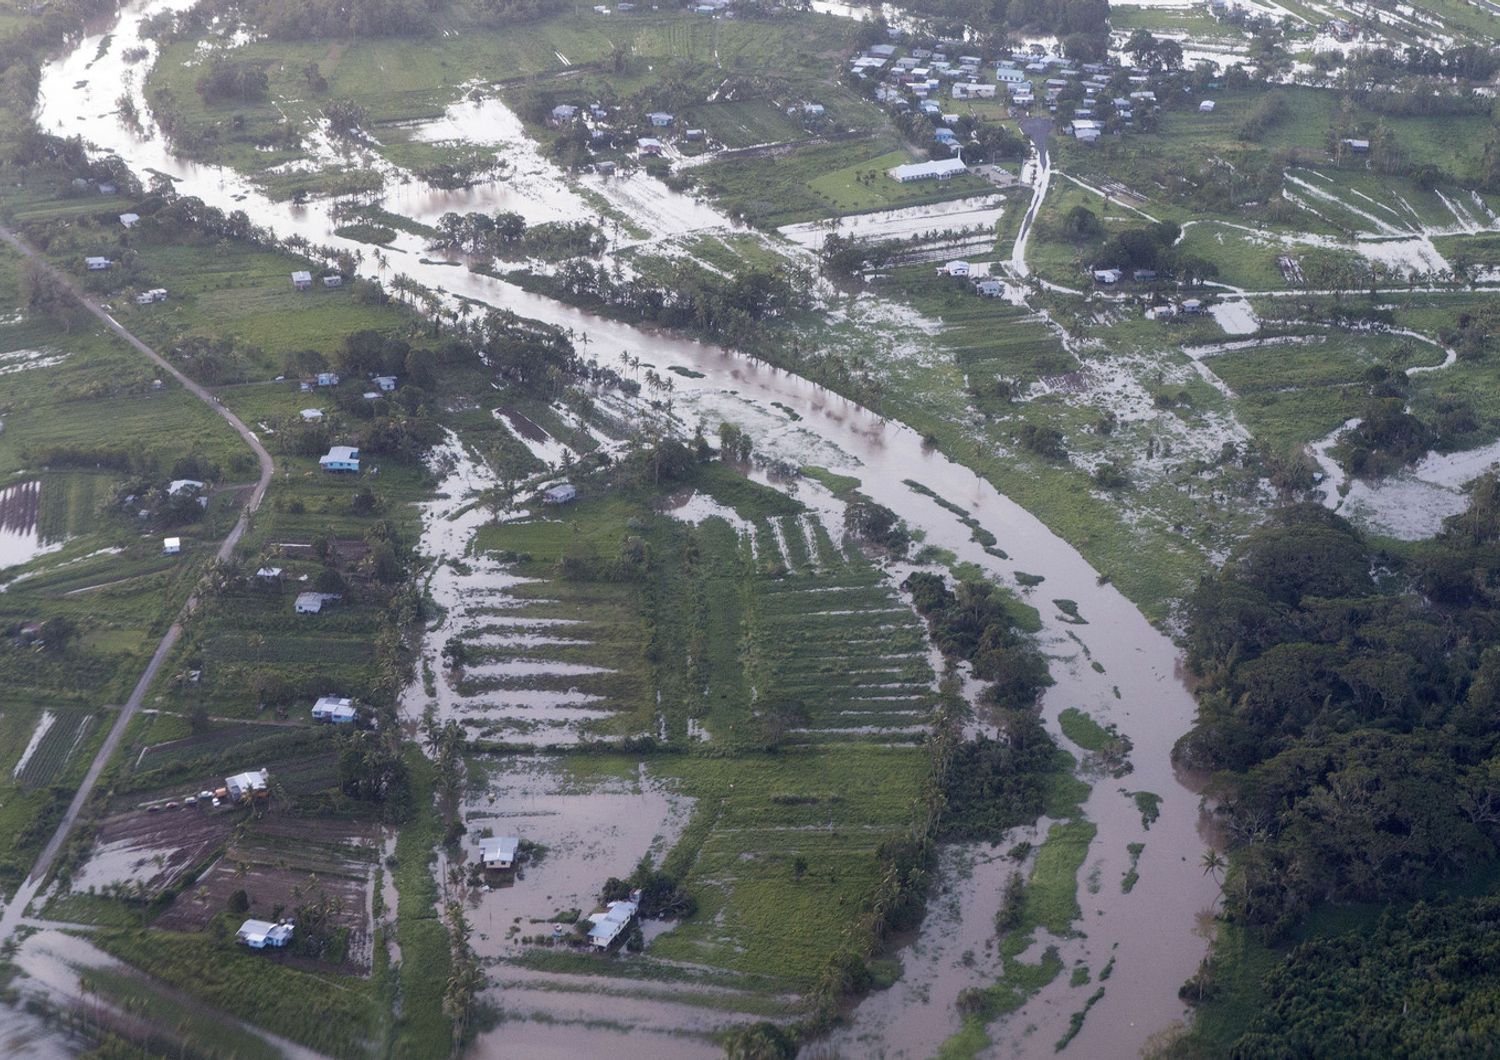 Isole Fiji ciclone Winston (AFP)&nbsp;